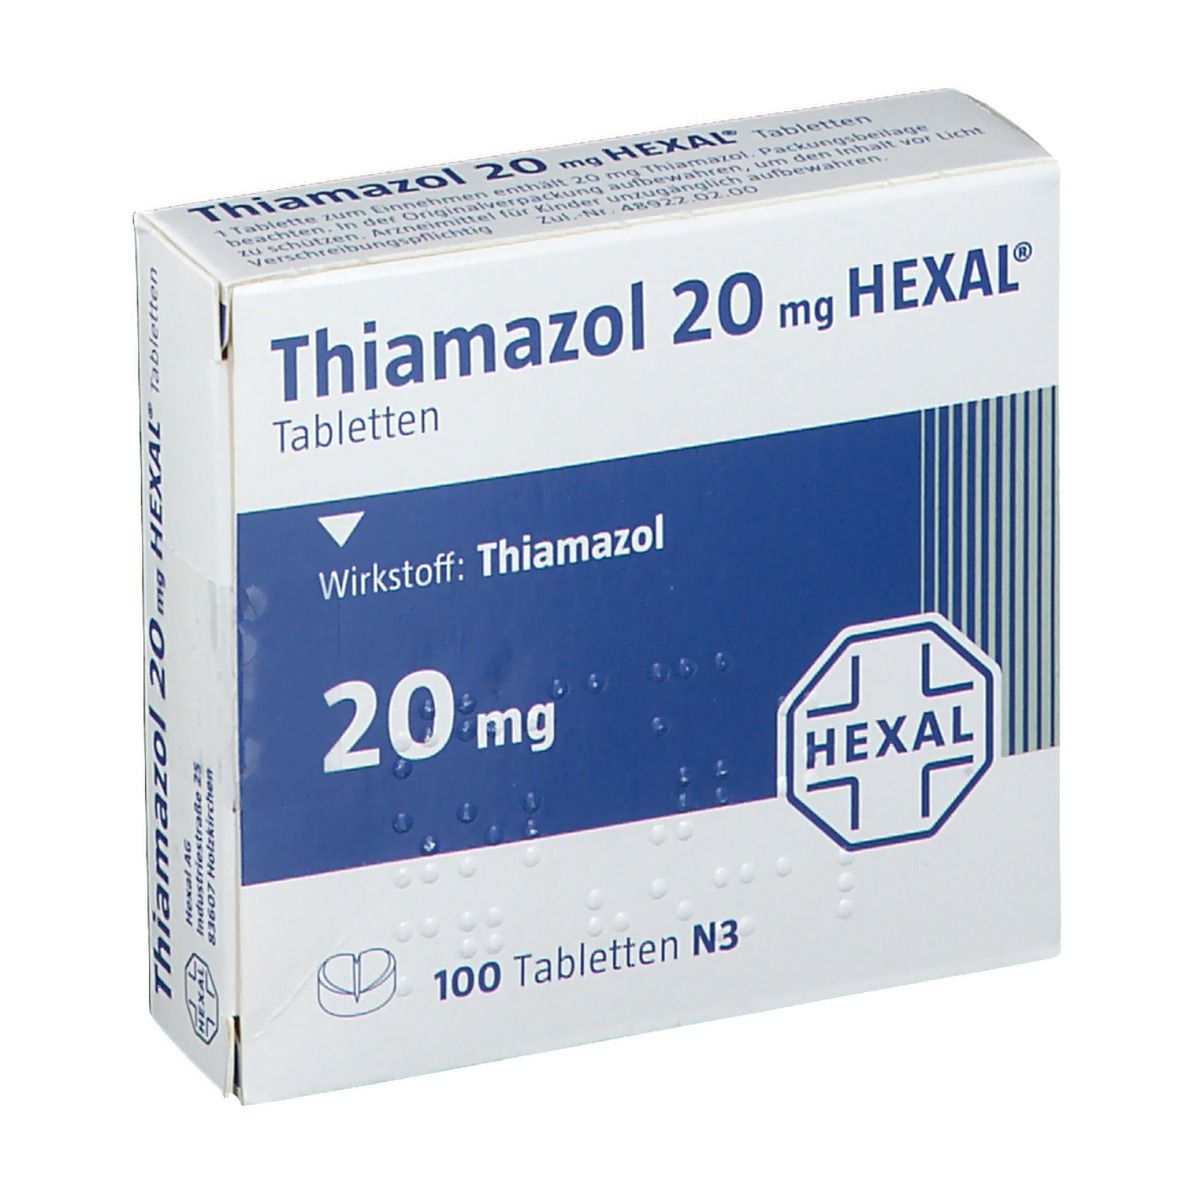 Тиамазол цена. Тиамазол 20. Тиамазол 5 мг. Тиамазол форма выпуска. Таблетки тиамазол 20.